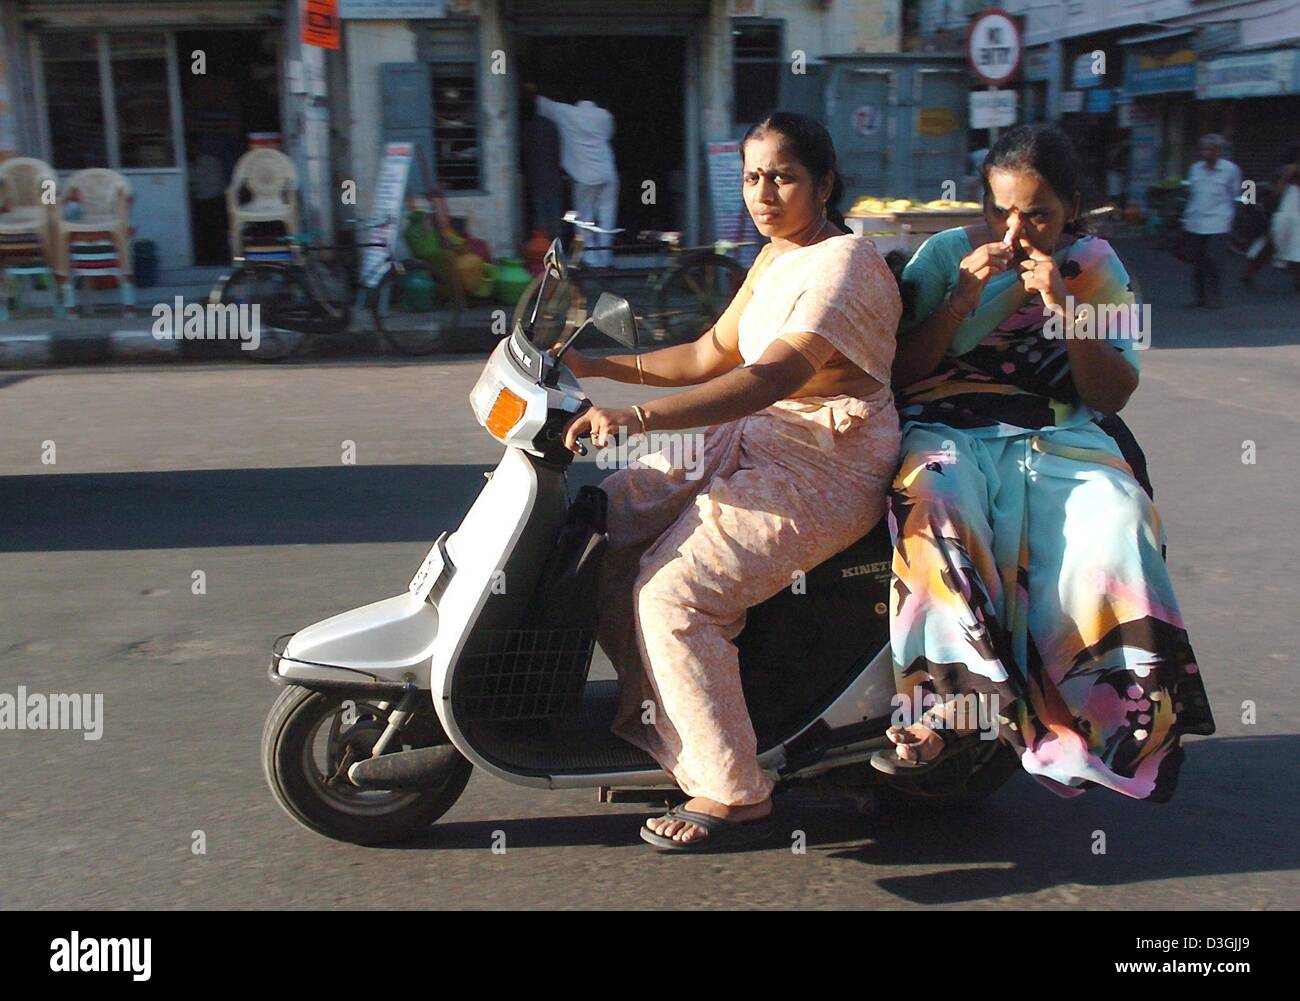 (Dpa) - fahren zwei Frauen auf einem Motorroller auf einer Straße in Chennai, früher bekannt als Madras, Indien, 21. Juli 2004. Kühe gelten als heilige Tiere in Indien. Die Stadt liegt im Süden von Indien wurde von den Portugiesen im 16. Jahrhundert gegründet. Chennai ist heute die viertgrößte Stadt in Indien mit 7 Millionen Einwohnern. Mehr als ein Viertel der Stadt Menschen leben in Slums Stockfoto